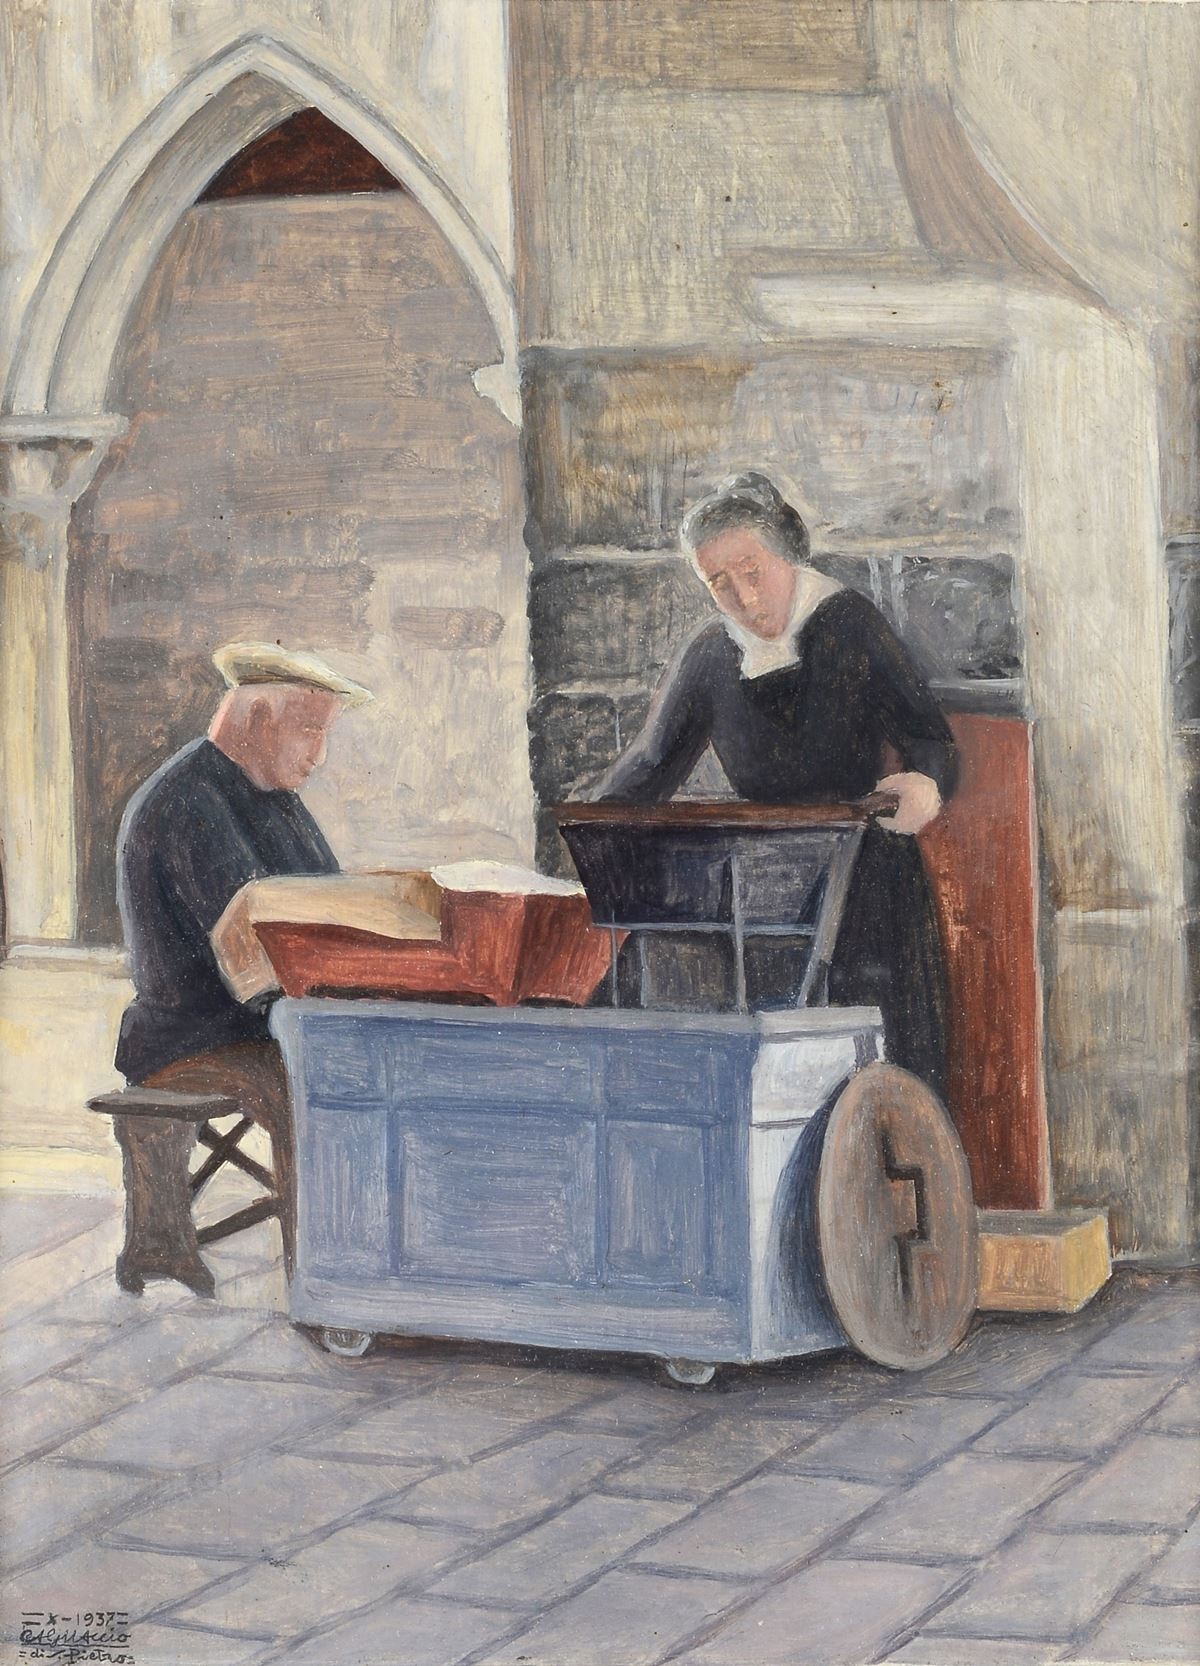 The roasted chestnut seller, 1937 - Cagnaccio di San Pietro